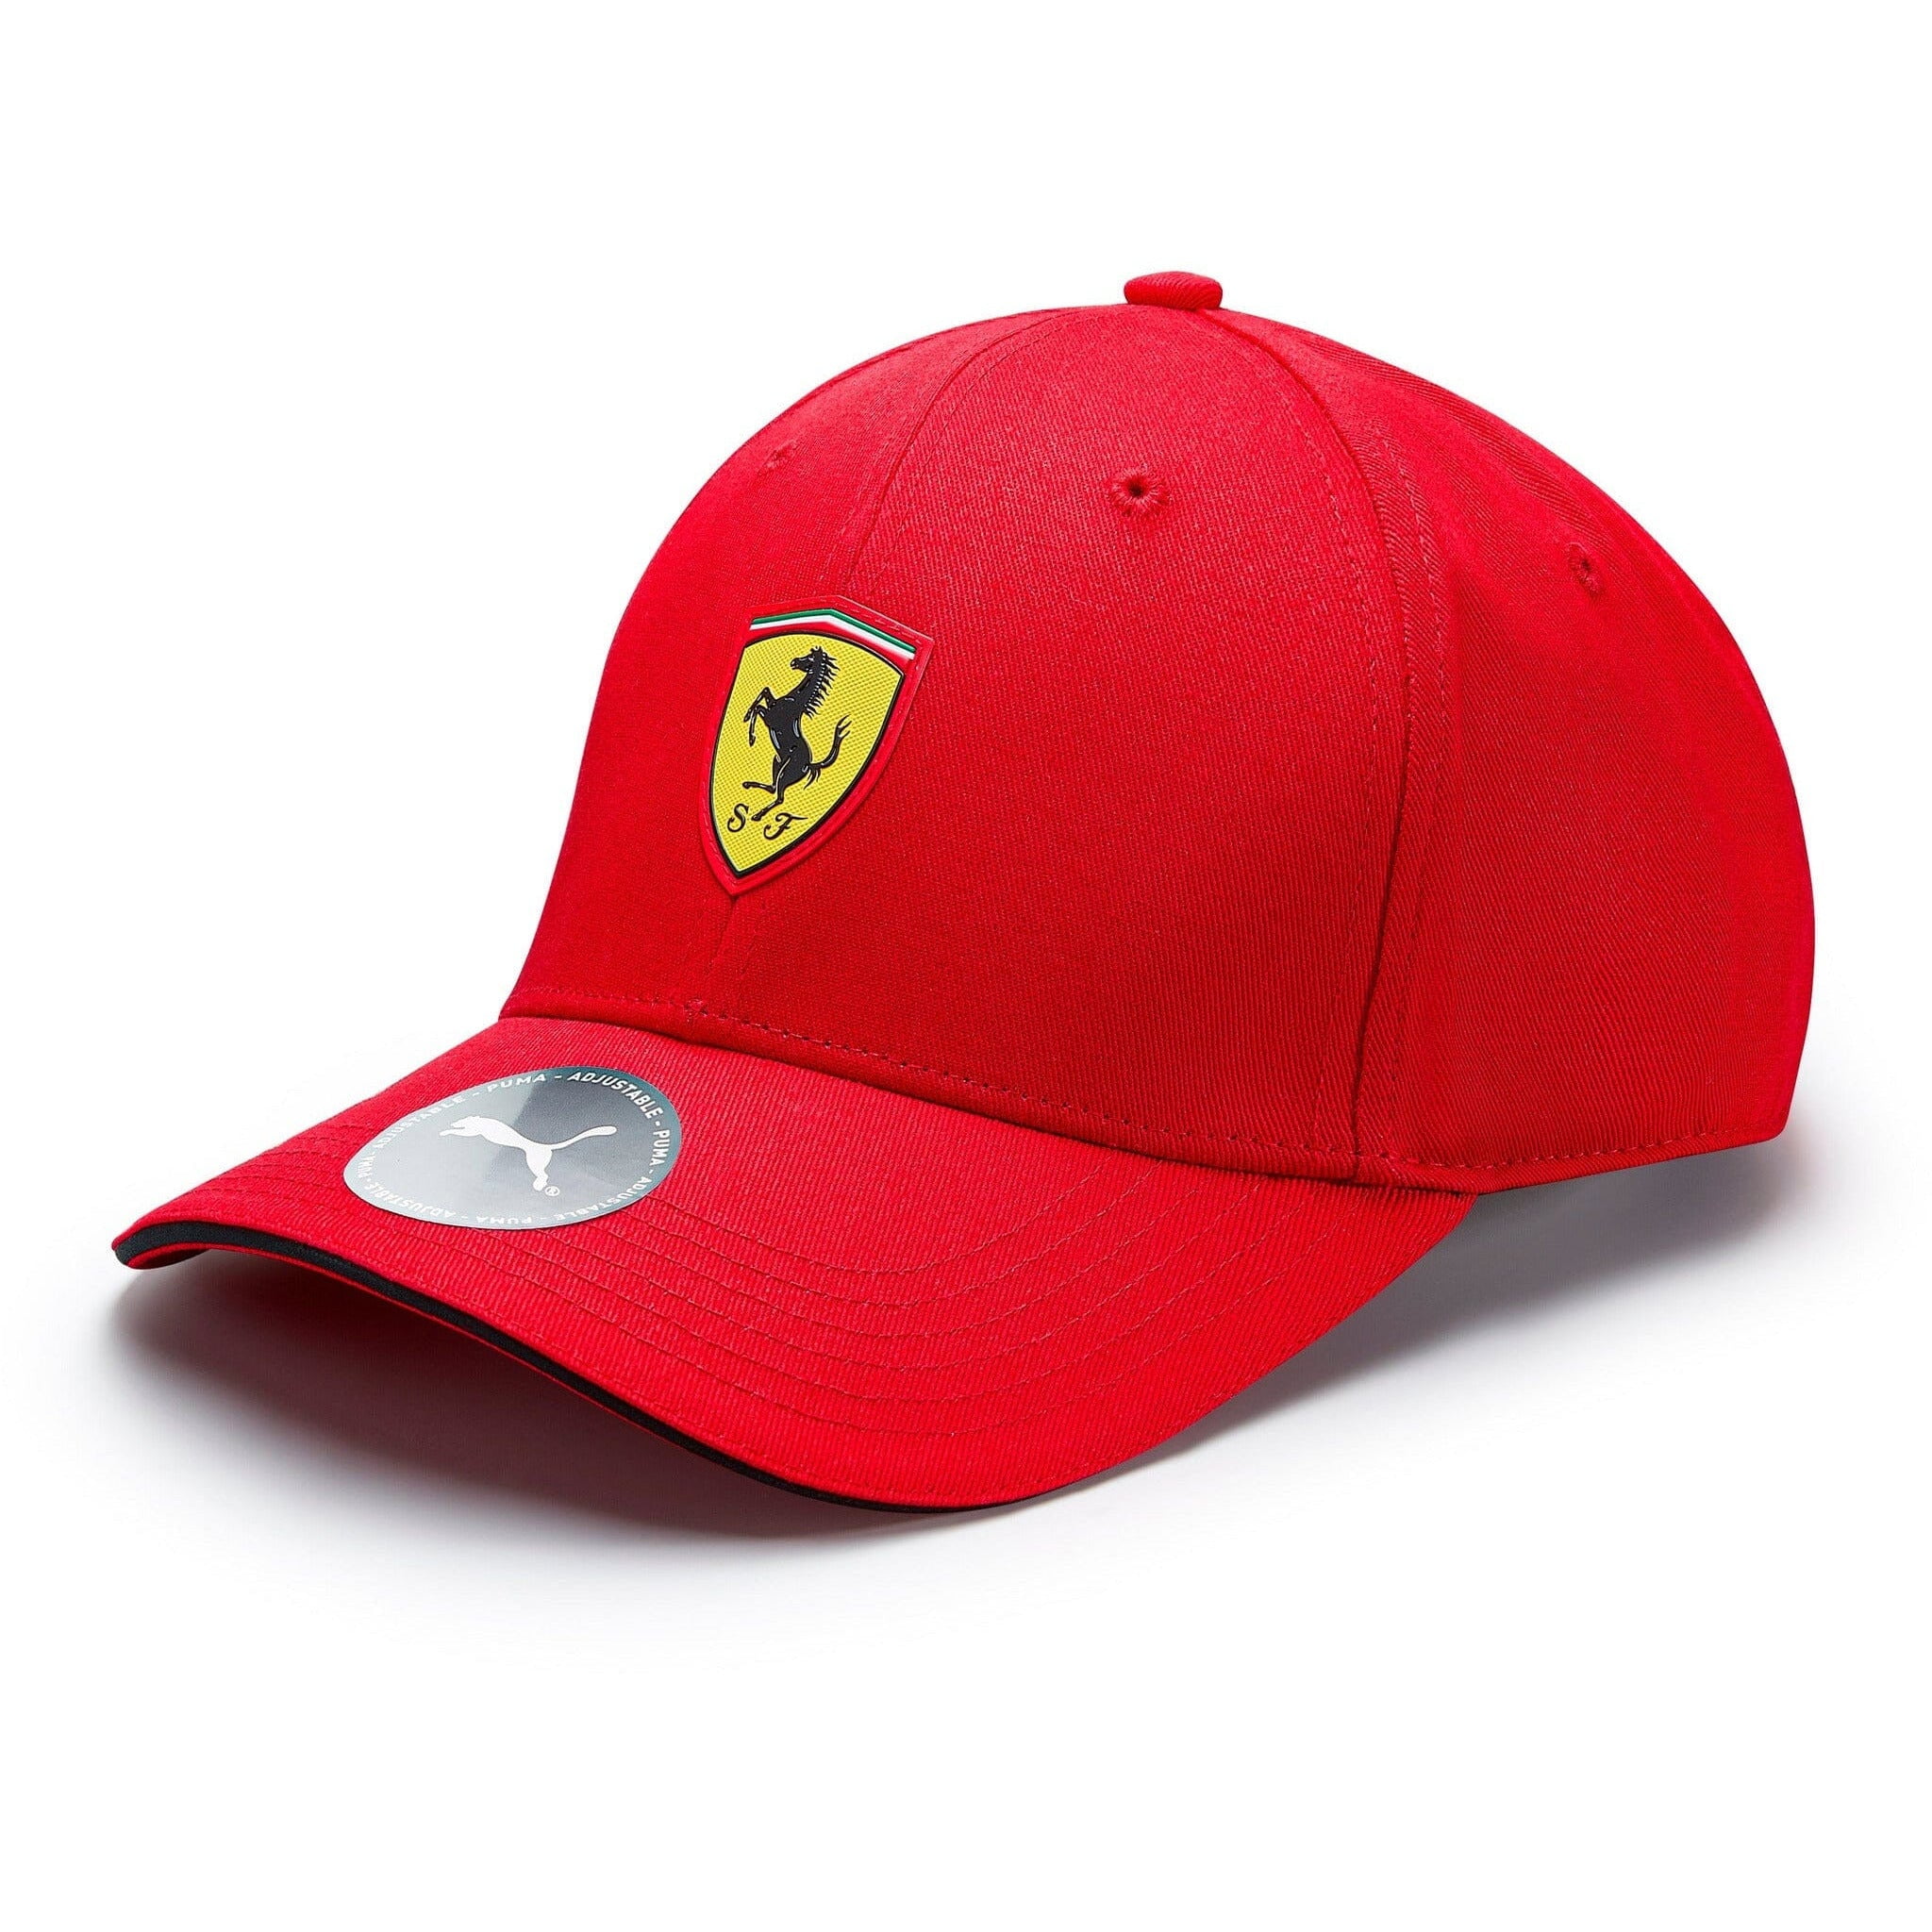 Scuderia Ferrari Puma Classic Hat - Red/Black - Walmart.com